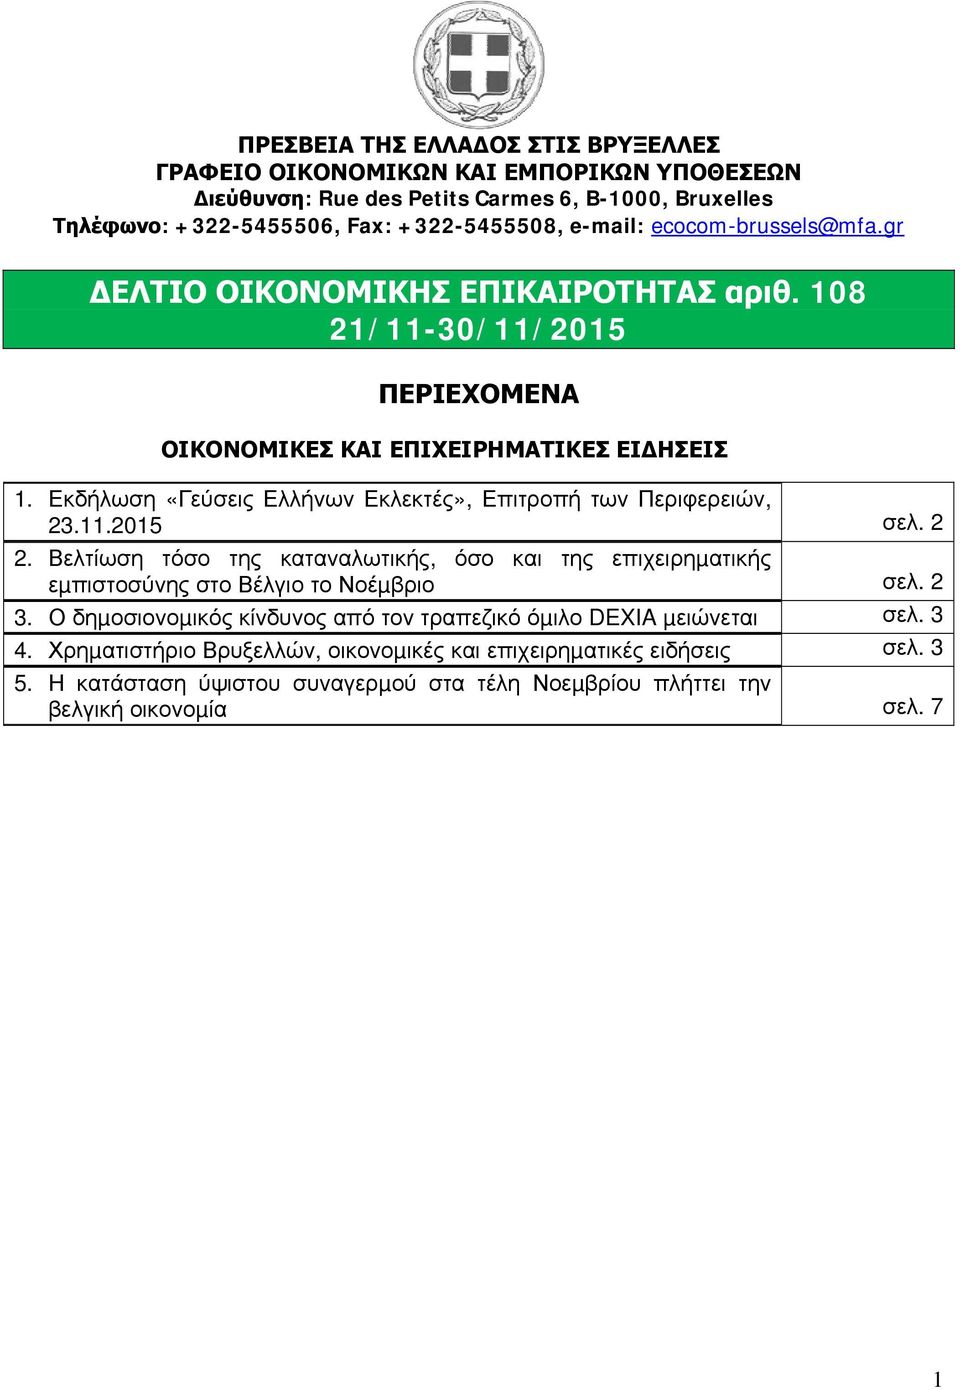 Εκδήλωση «Γεύσεις Ελλήνων Εκλεκτές», Επιτροπή των Περιφερειών, 23.11.2015 σελ. 2 2. Βελτίωση τόσο της καταναλωτικής, όσο και της επιχειρηµατικής εµπιστοσύνης στο Βέλγιο το Νοέµβριο σελ.